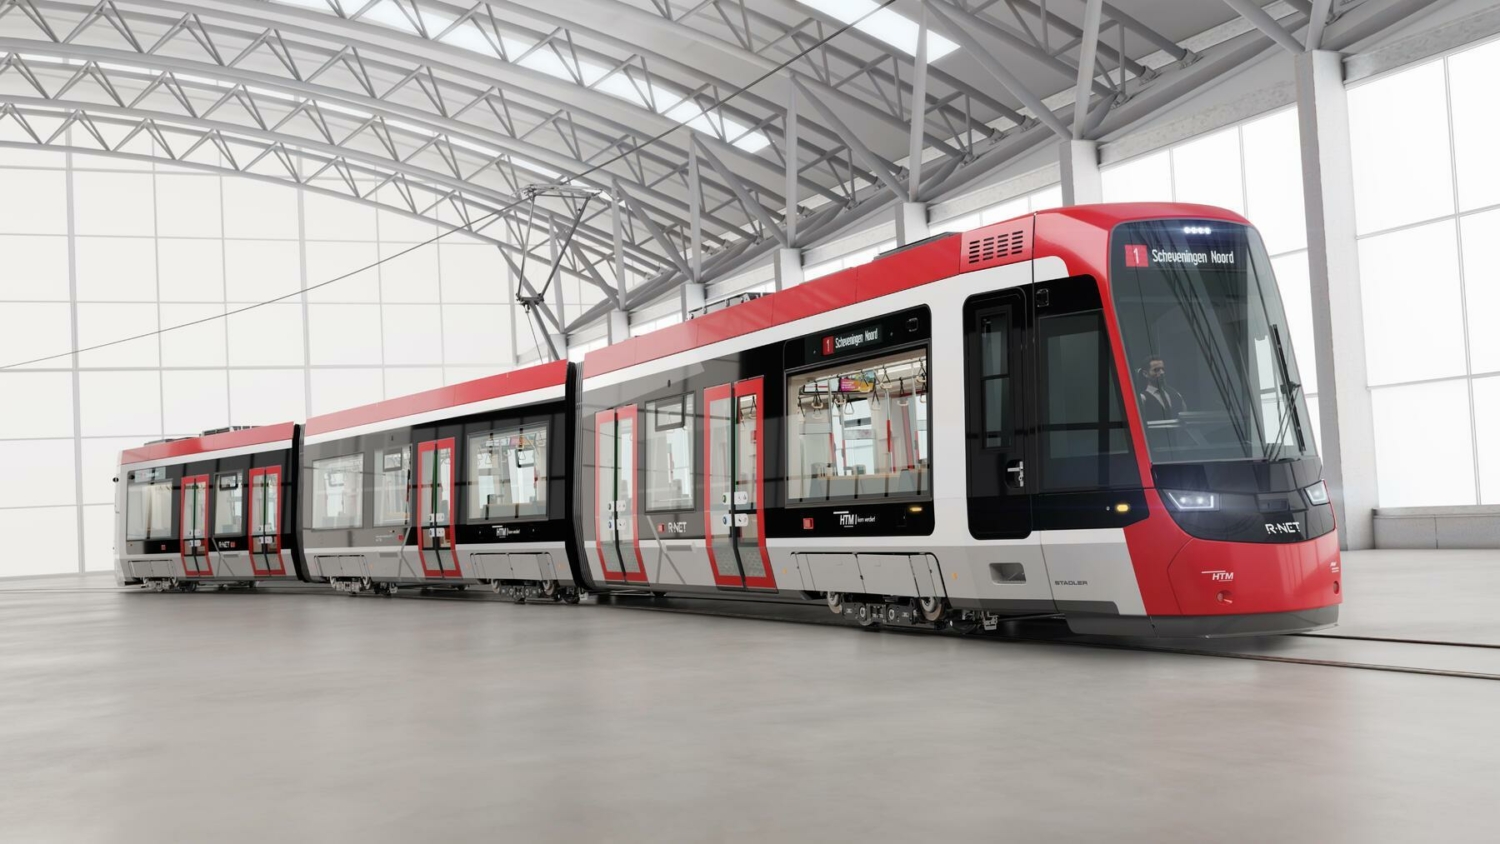 Návrh designového řešení tramvaje TINA v provedení pro Haag. (foto: Stadler)